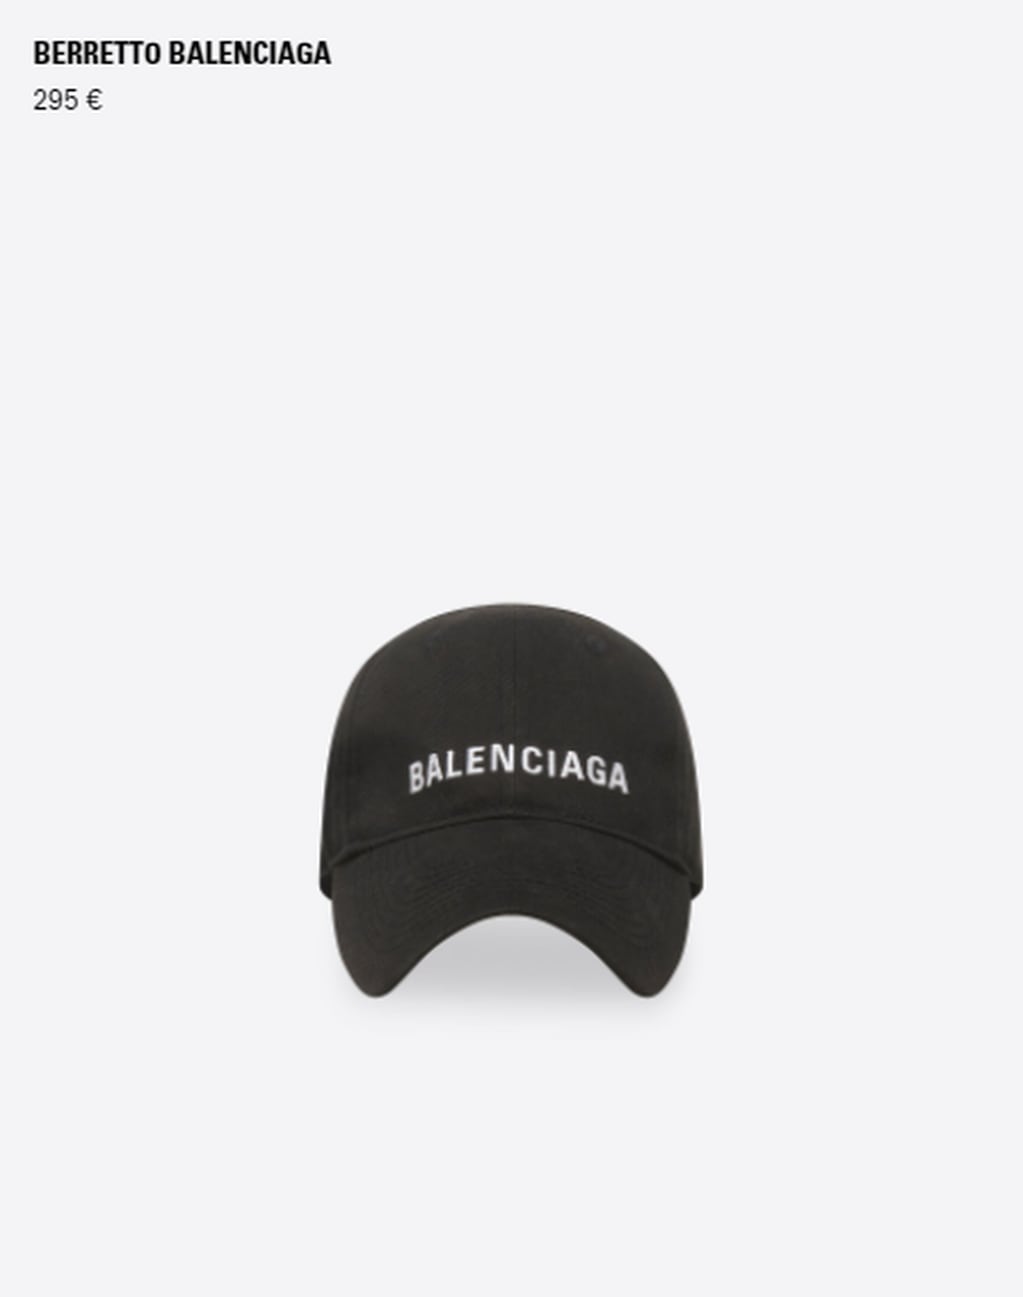 En la página oficial de Balenciaga, la gorra cuesta 295 euros.